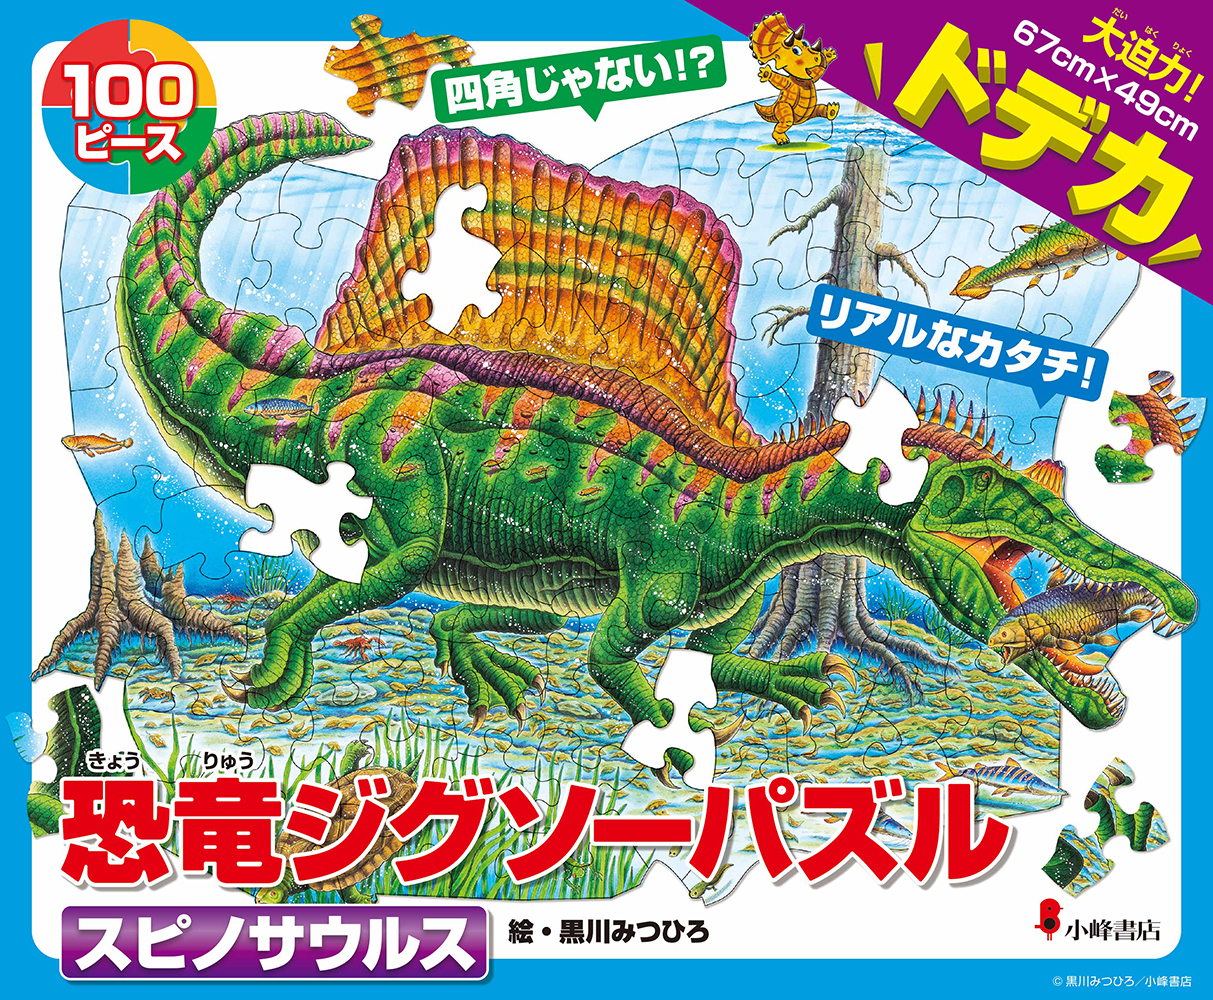 黒川みつひろさん「恐竜ジグソーパズル」最新作『スピノサウルス』発売！